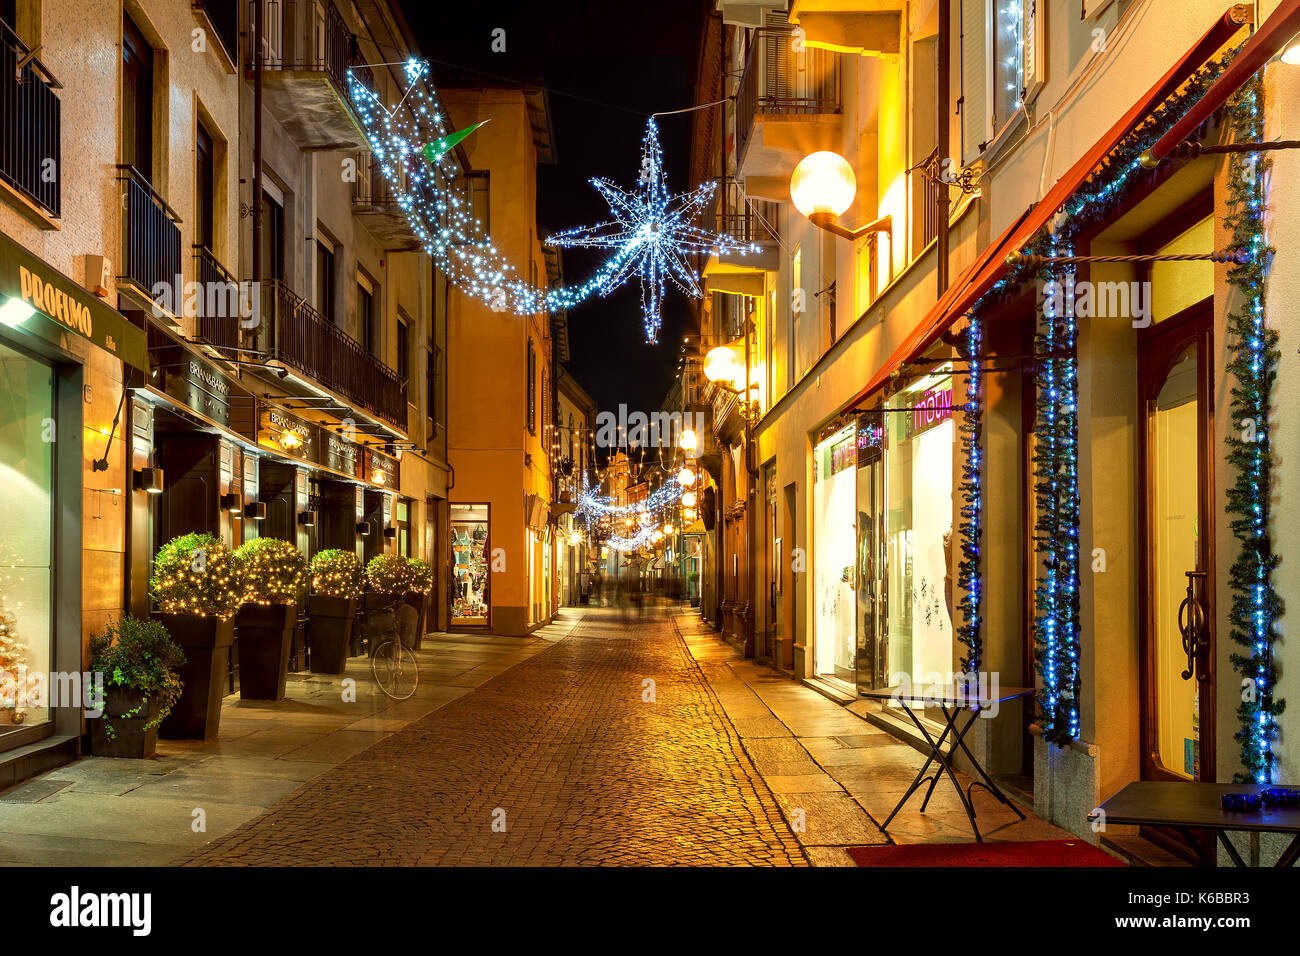 Alba, Italia - 07 dicembre 2011: strada pedonale e negozi nel centro storico di Alba illuminato e decorato per il natale. Foto Stock